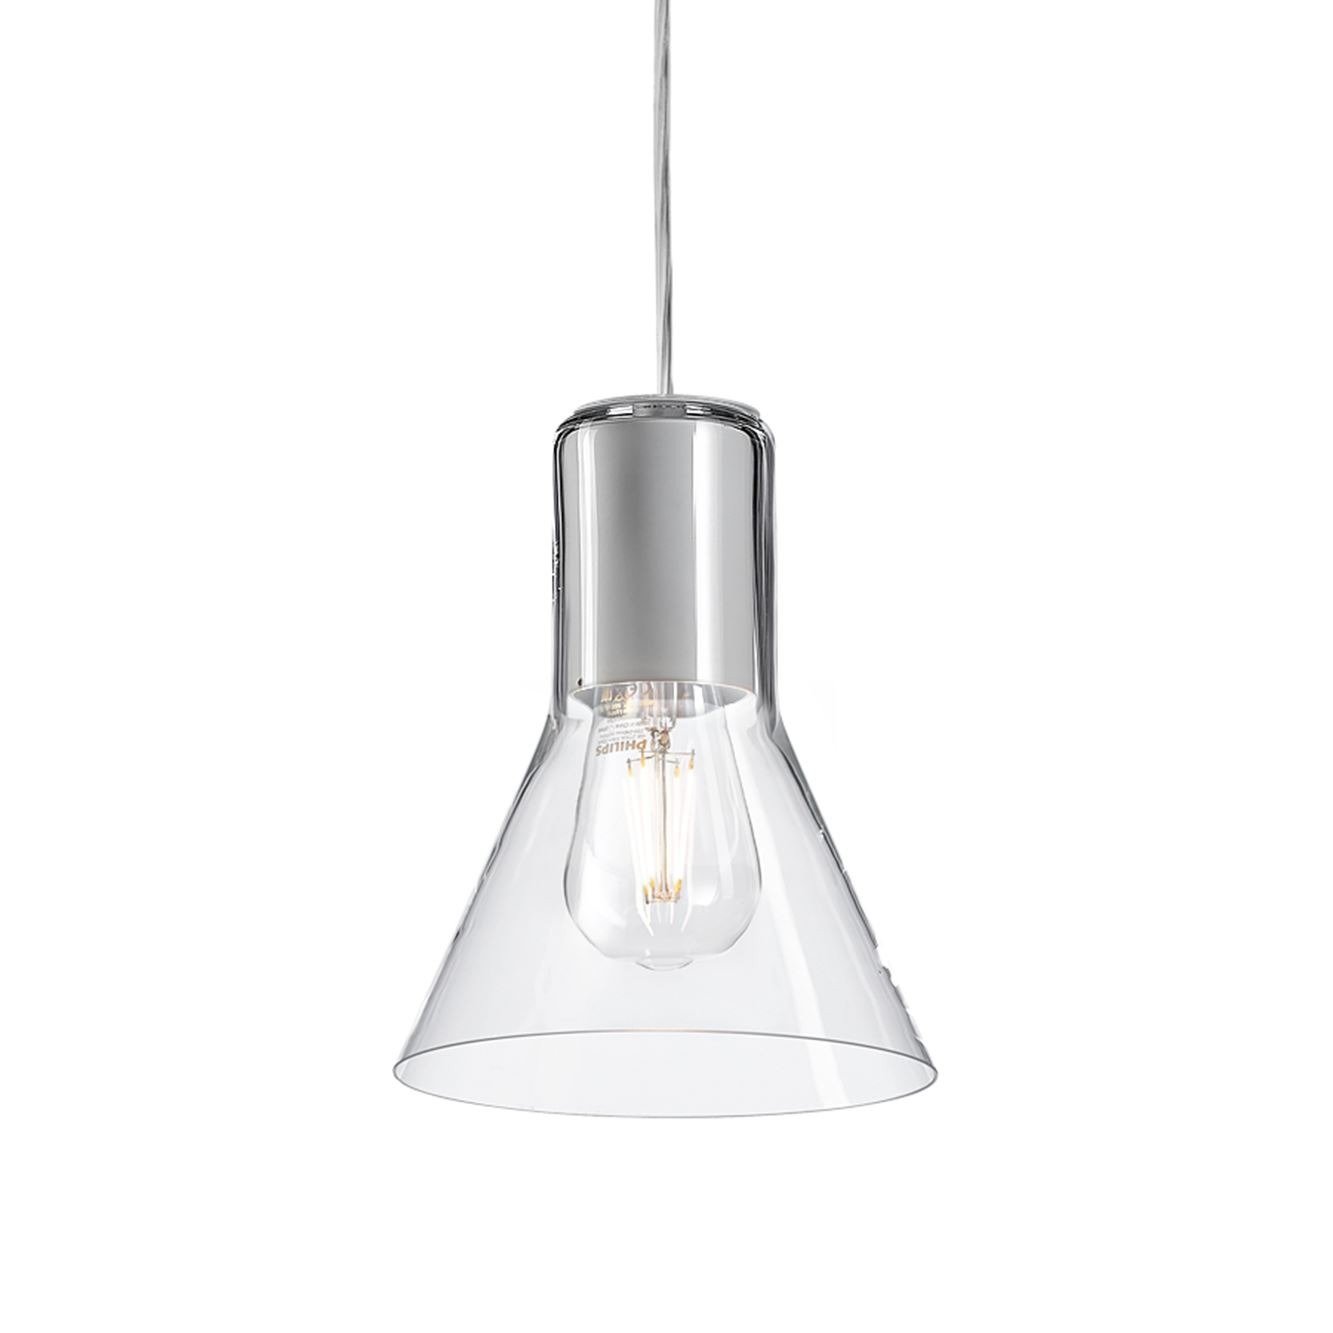 Aqform :: Lampa wisząca Modern transparentny klosz śr. 16,6 cm